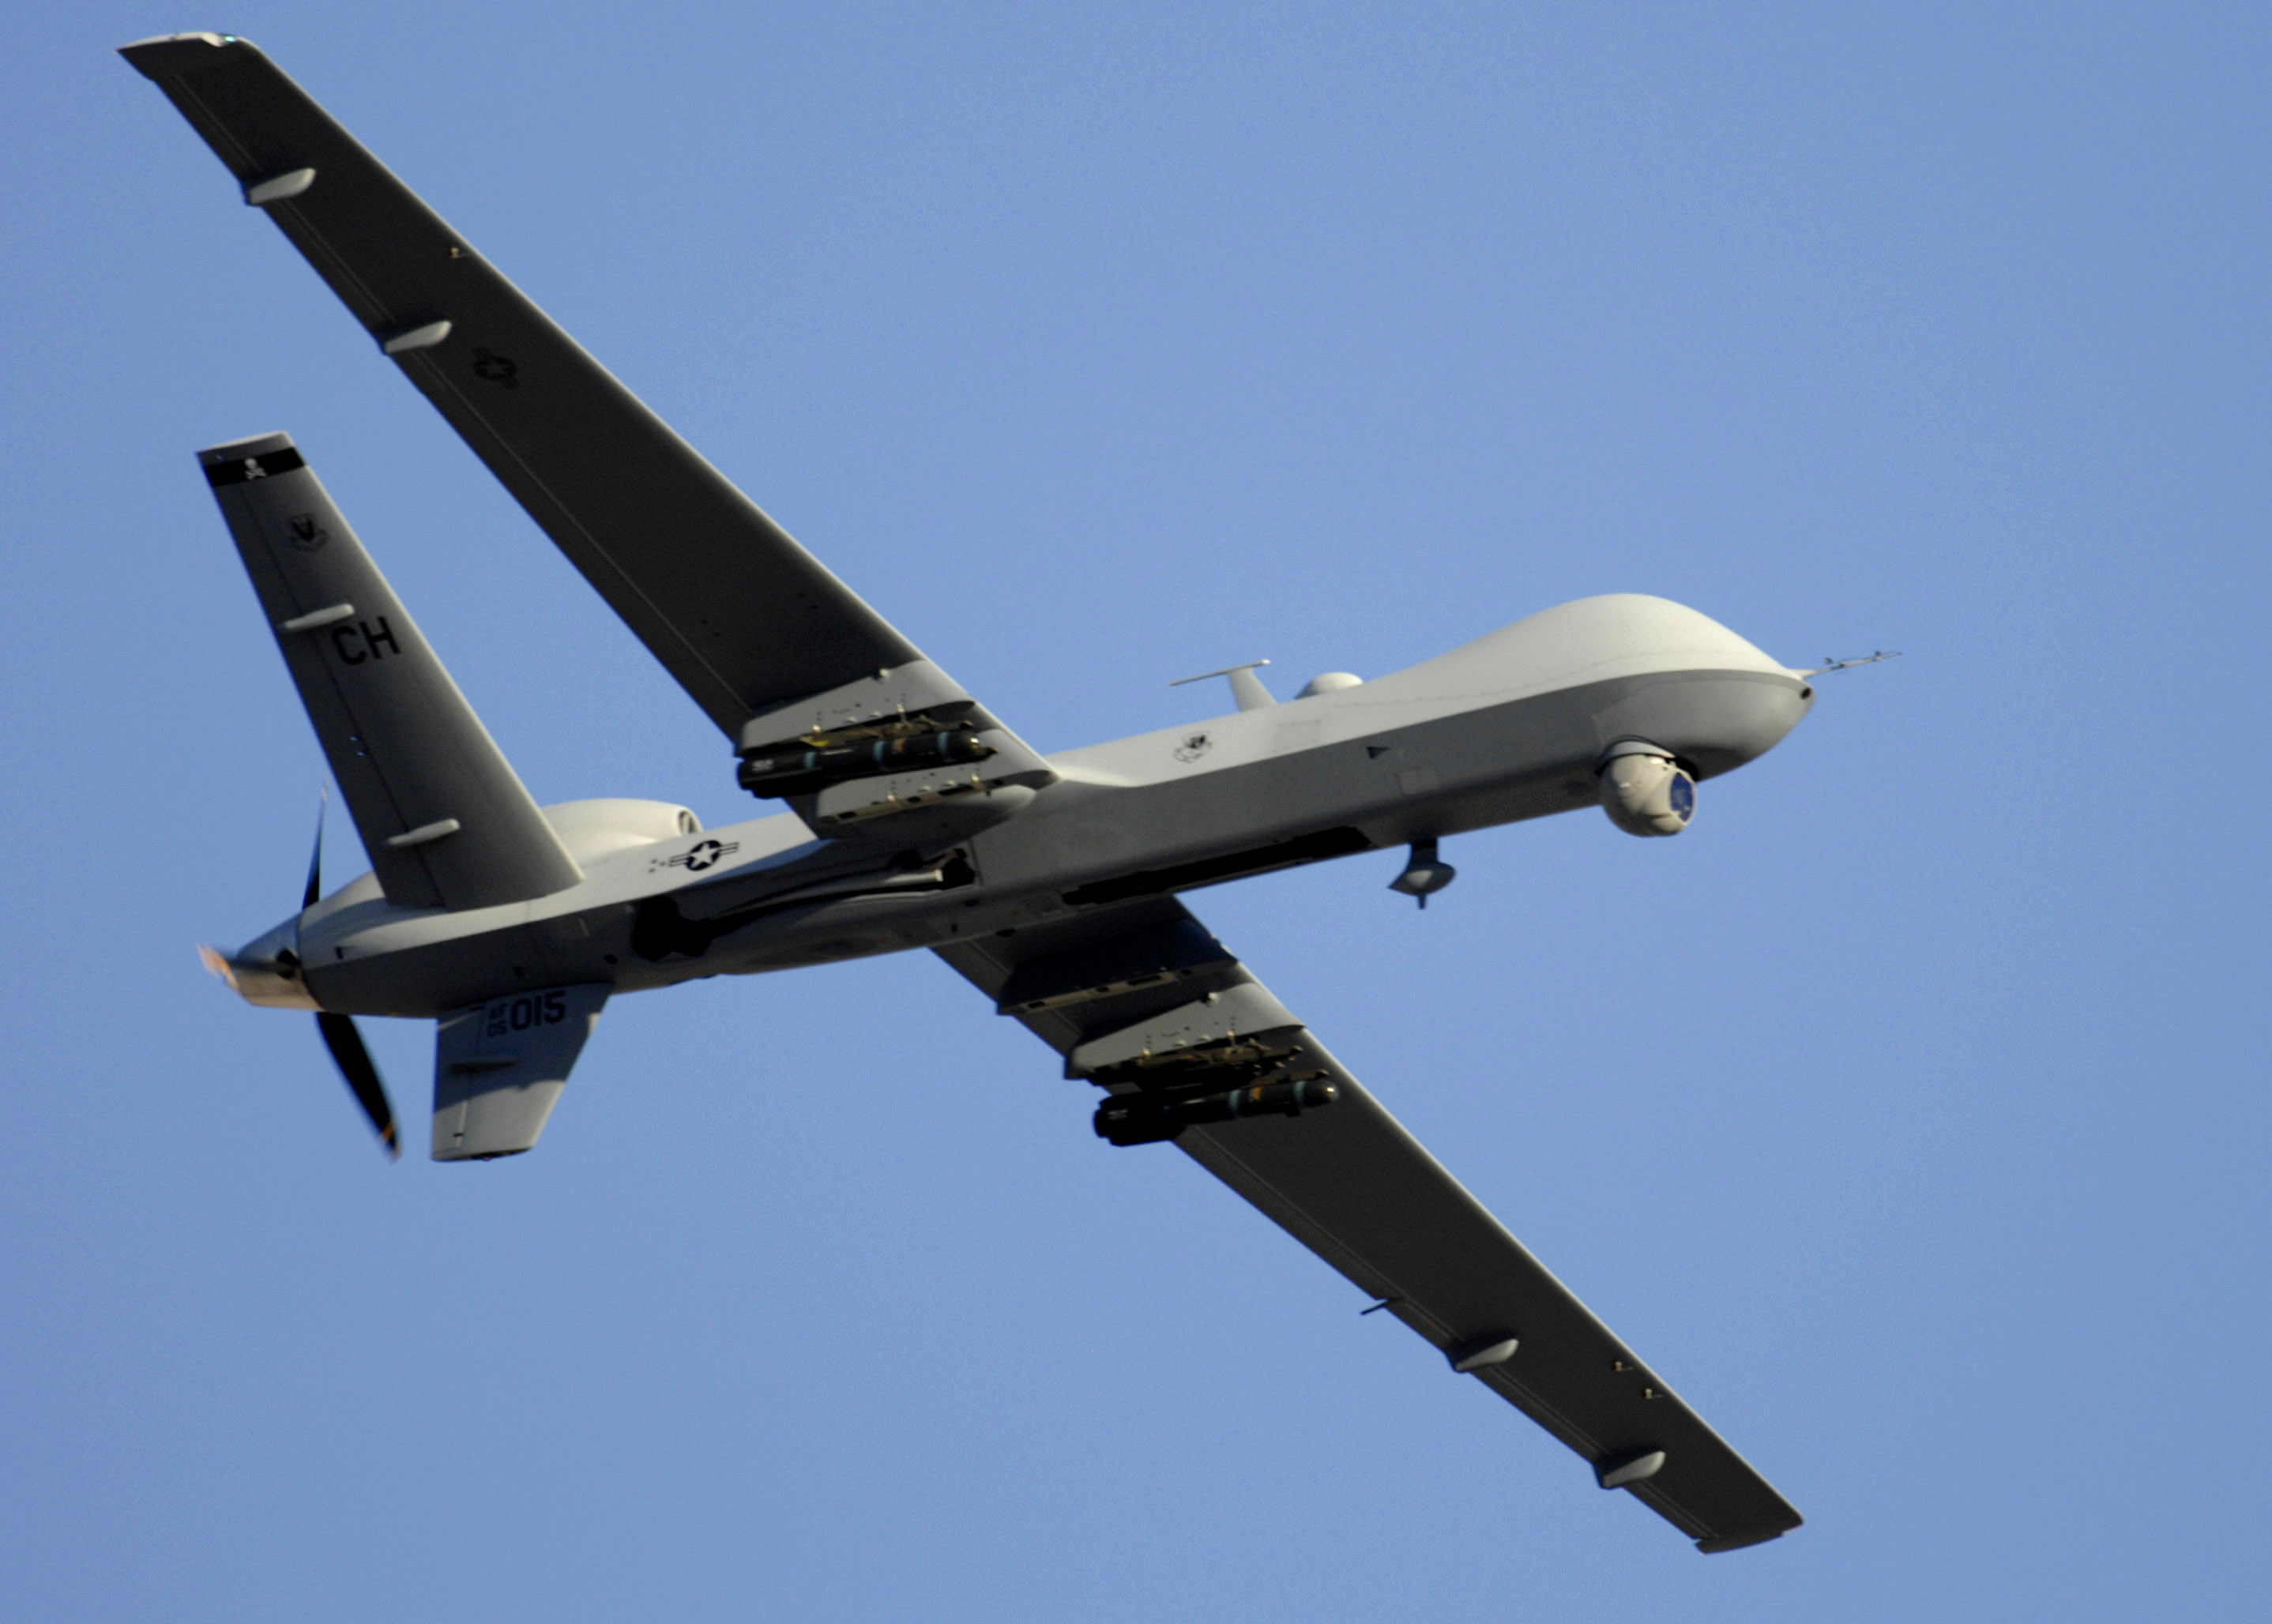 Résultat de recherche d'images pour "avion télécommandé américain MQ-9 Reaper"